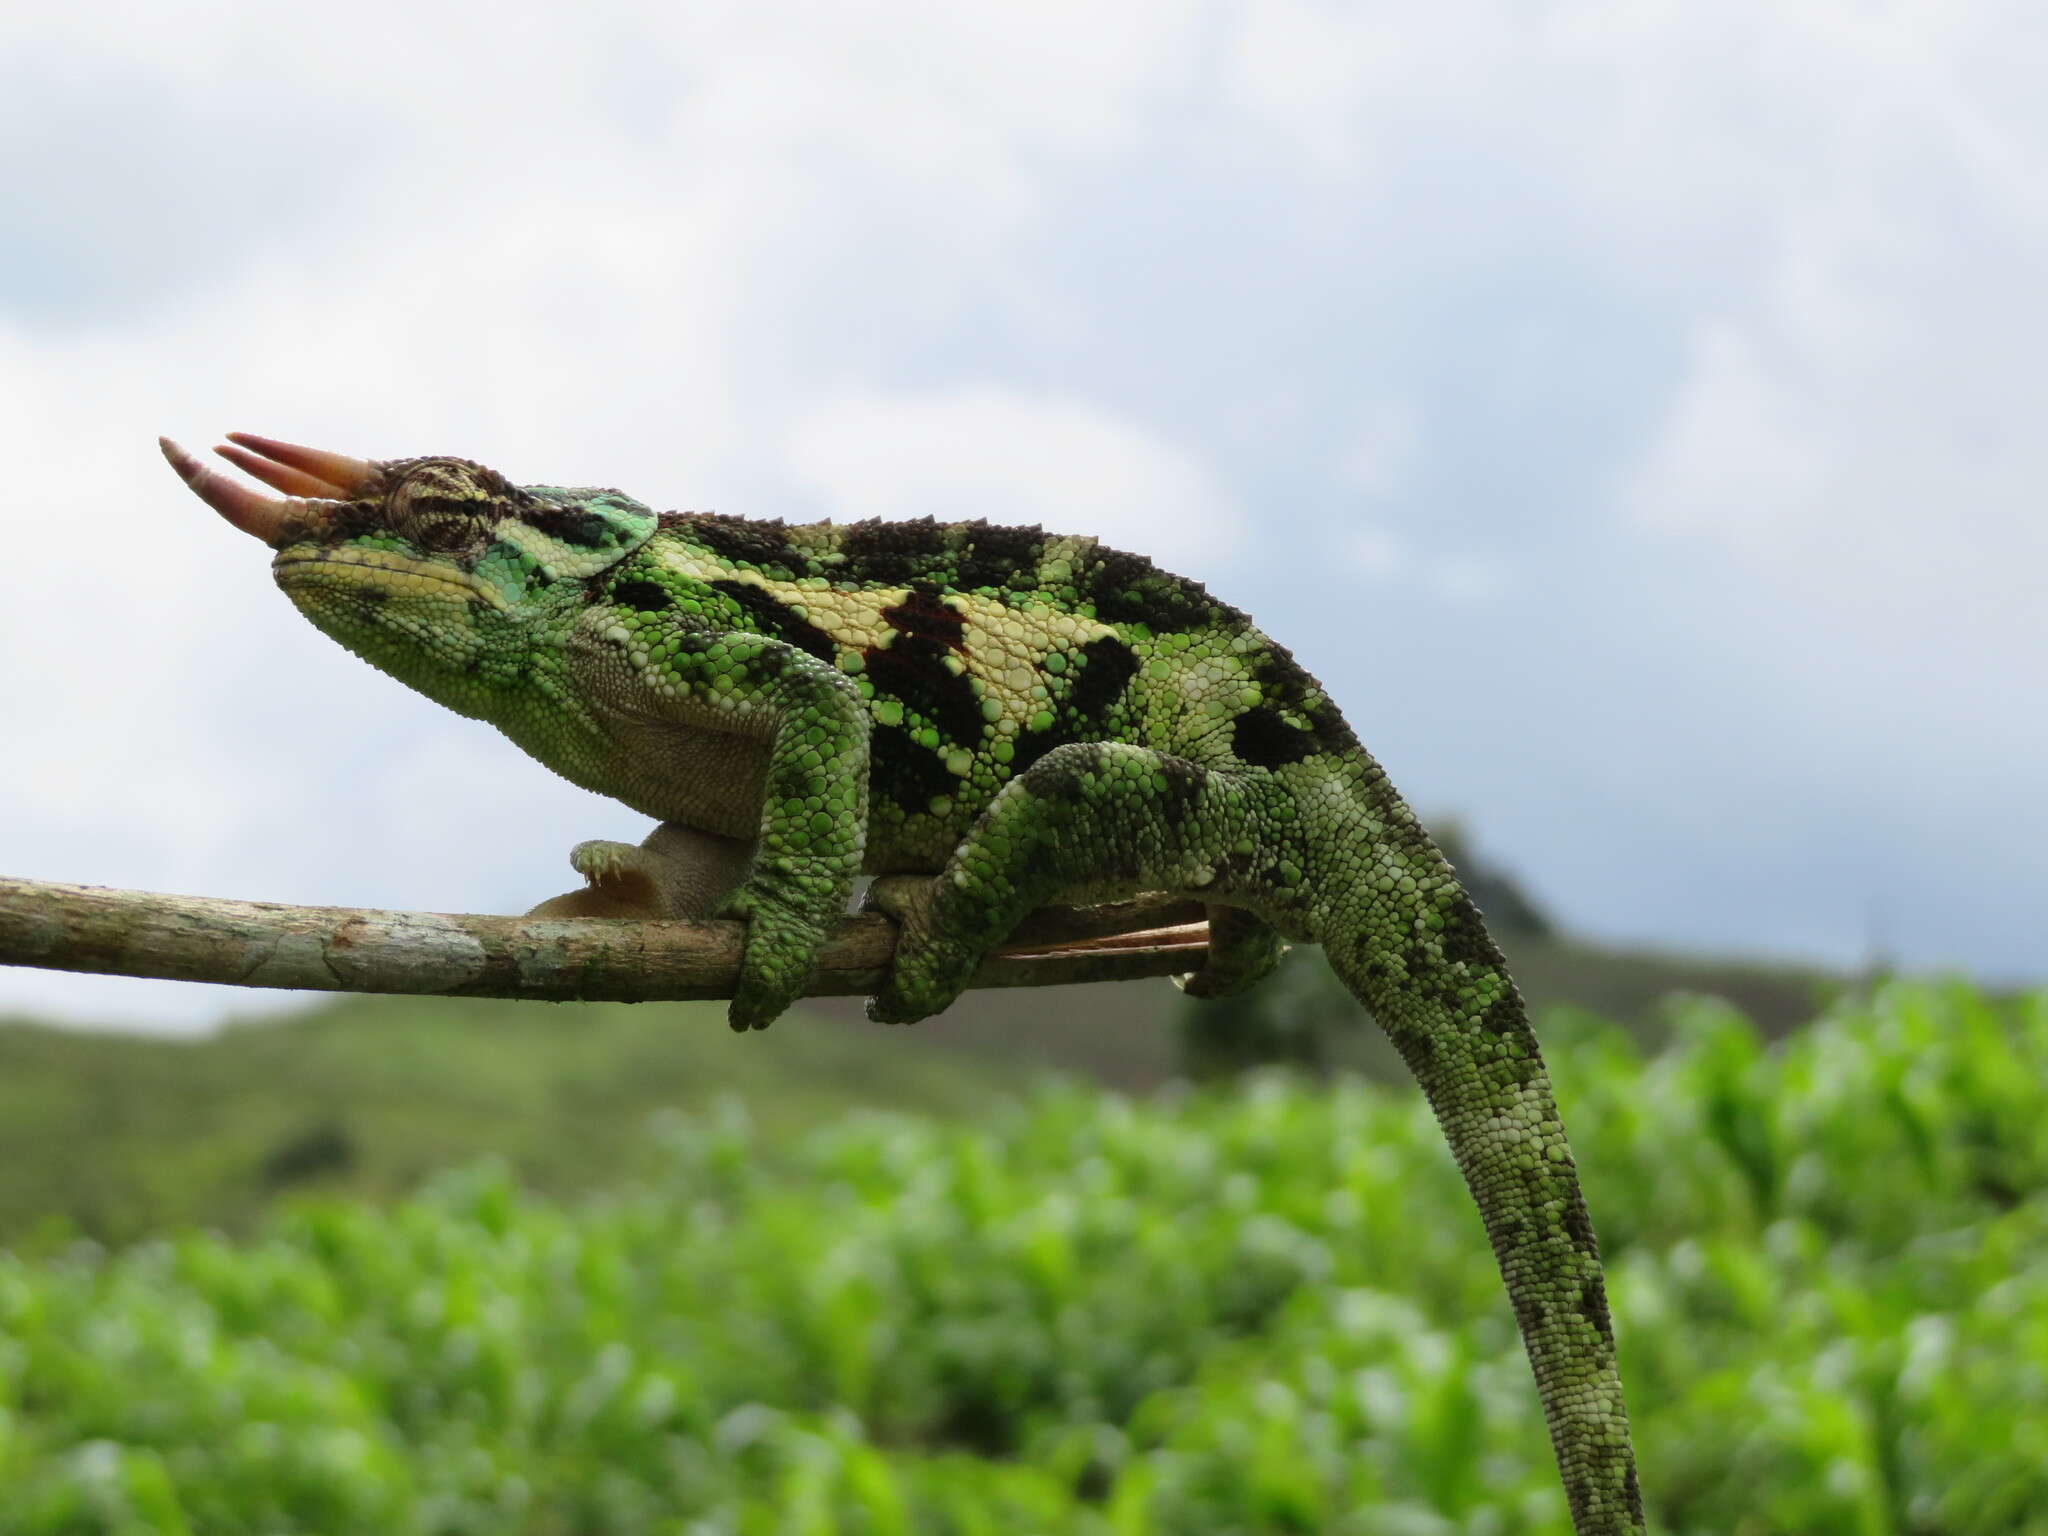 Image of Wemer's Chameleon